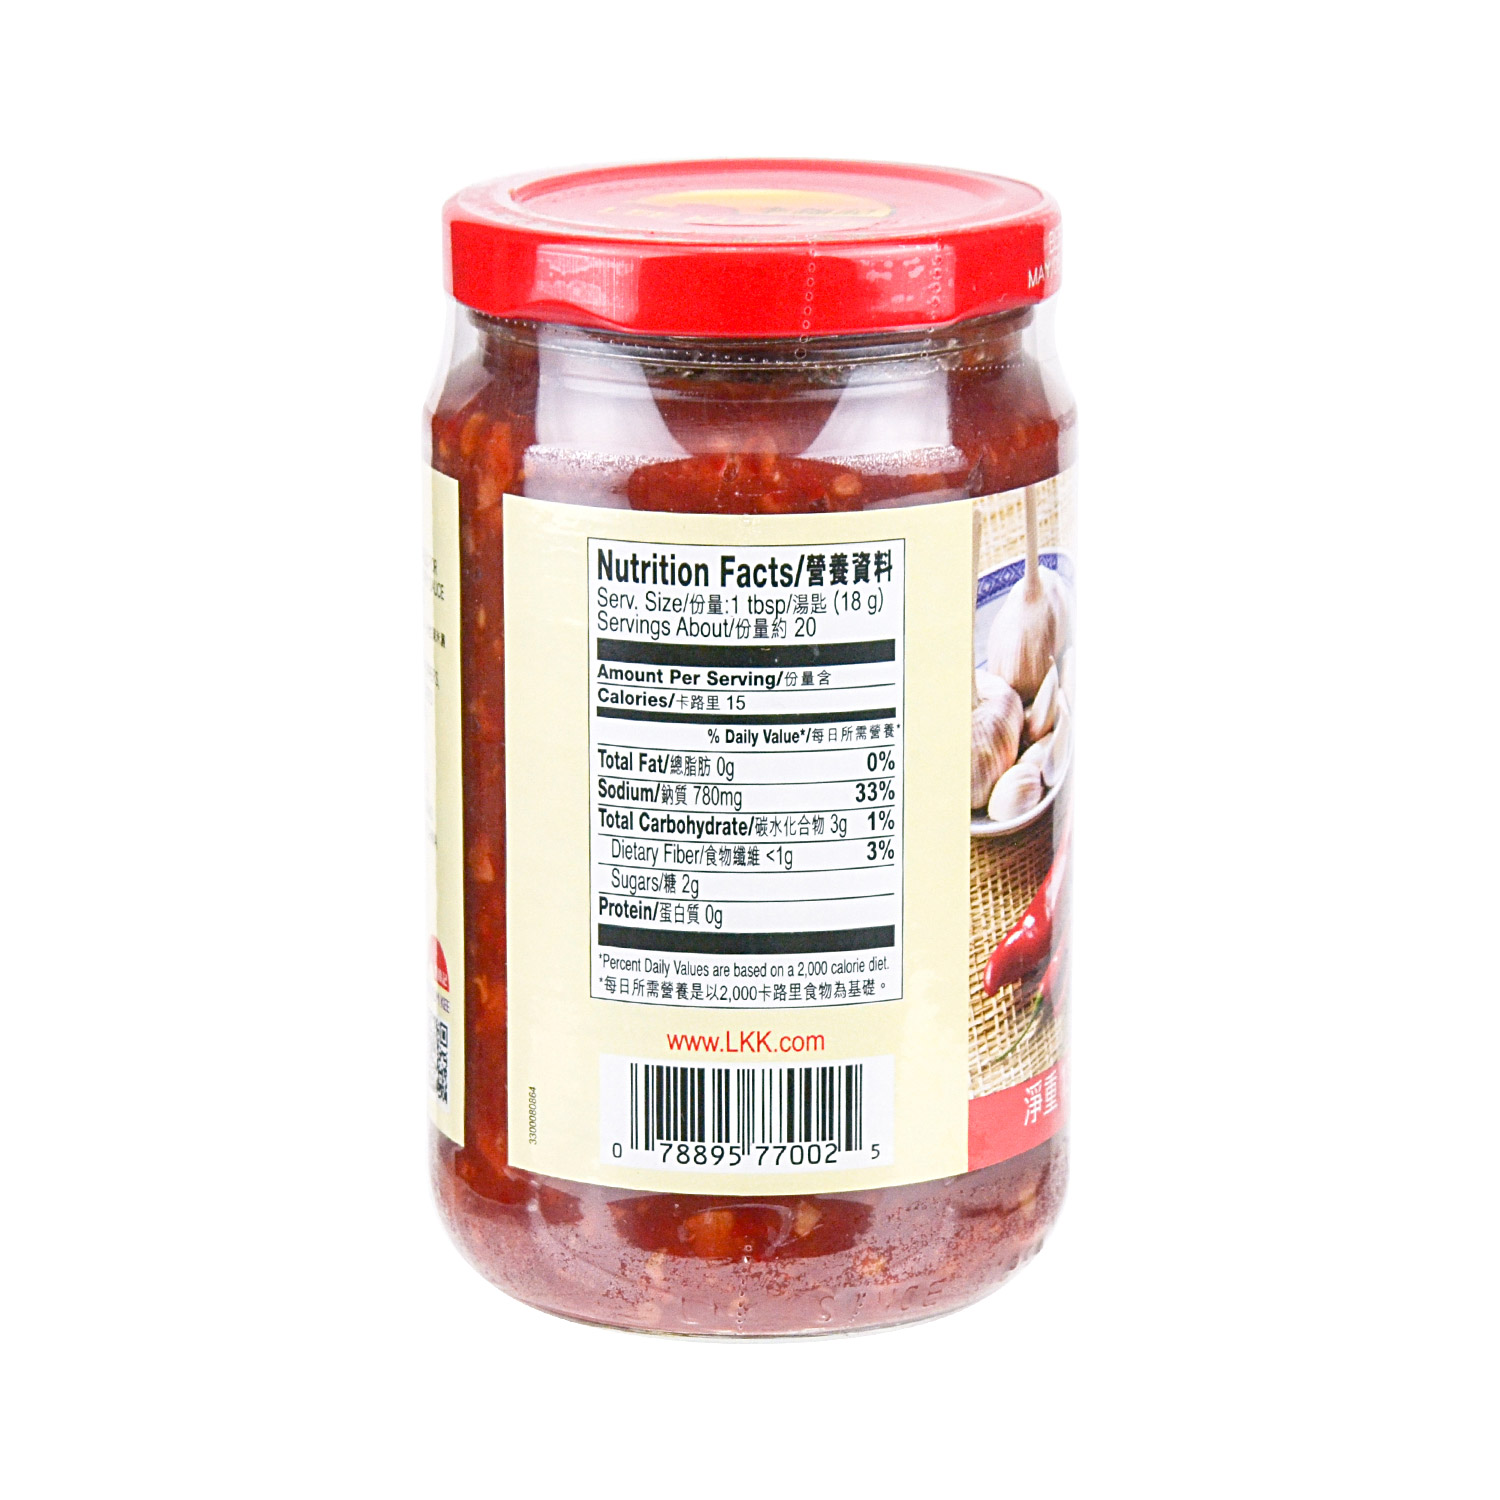 李锦记辣豆瓣酱368gLKK’s Chili Bean Sauce (Toban Djan) – Five continents international